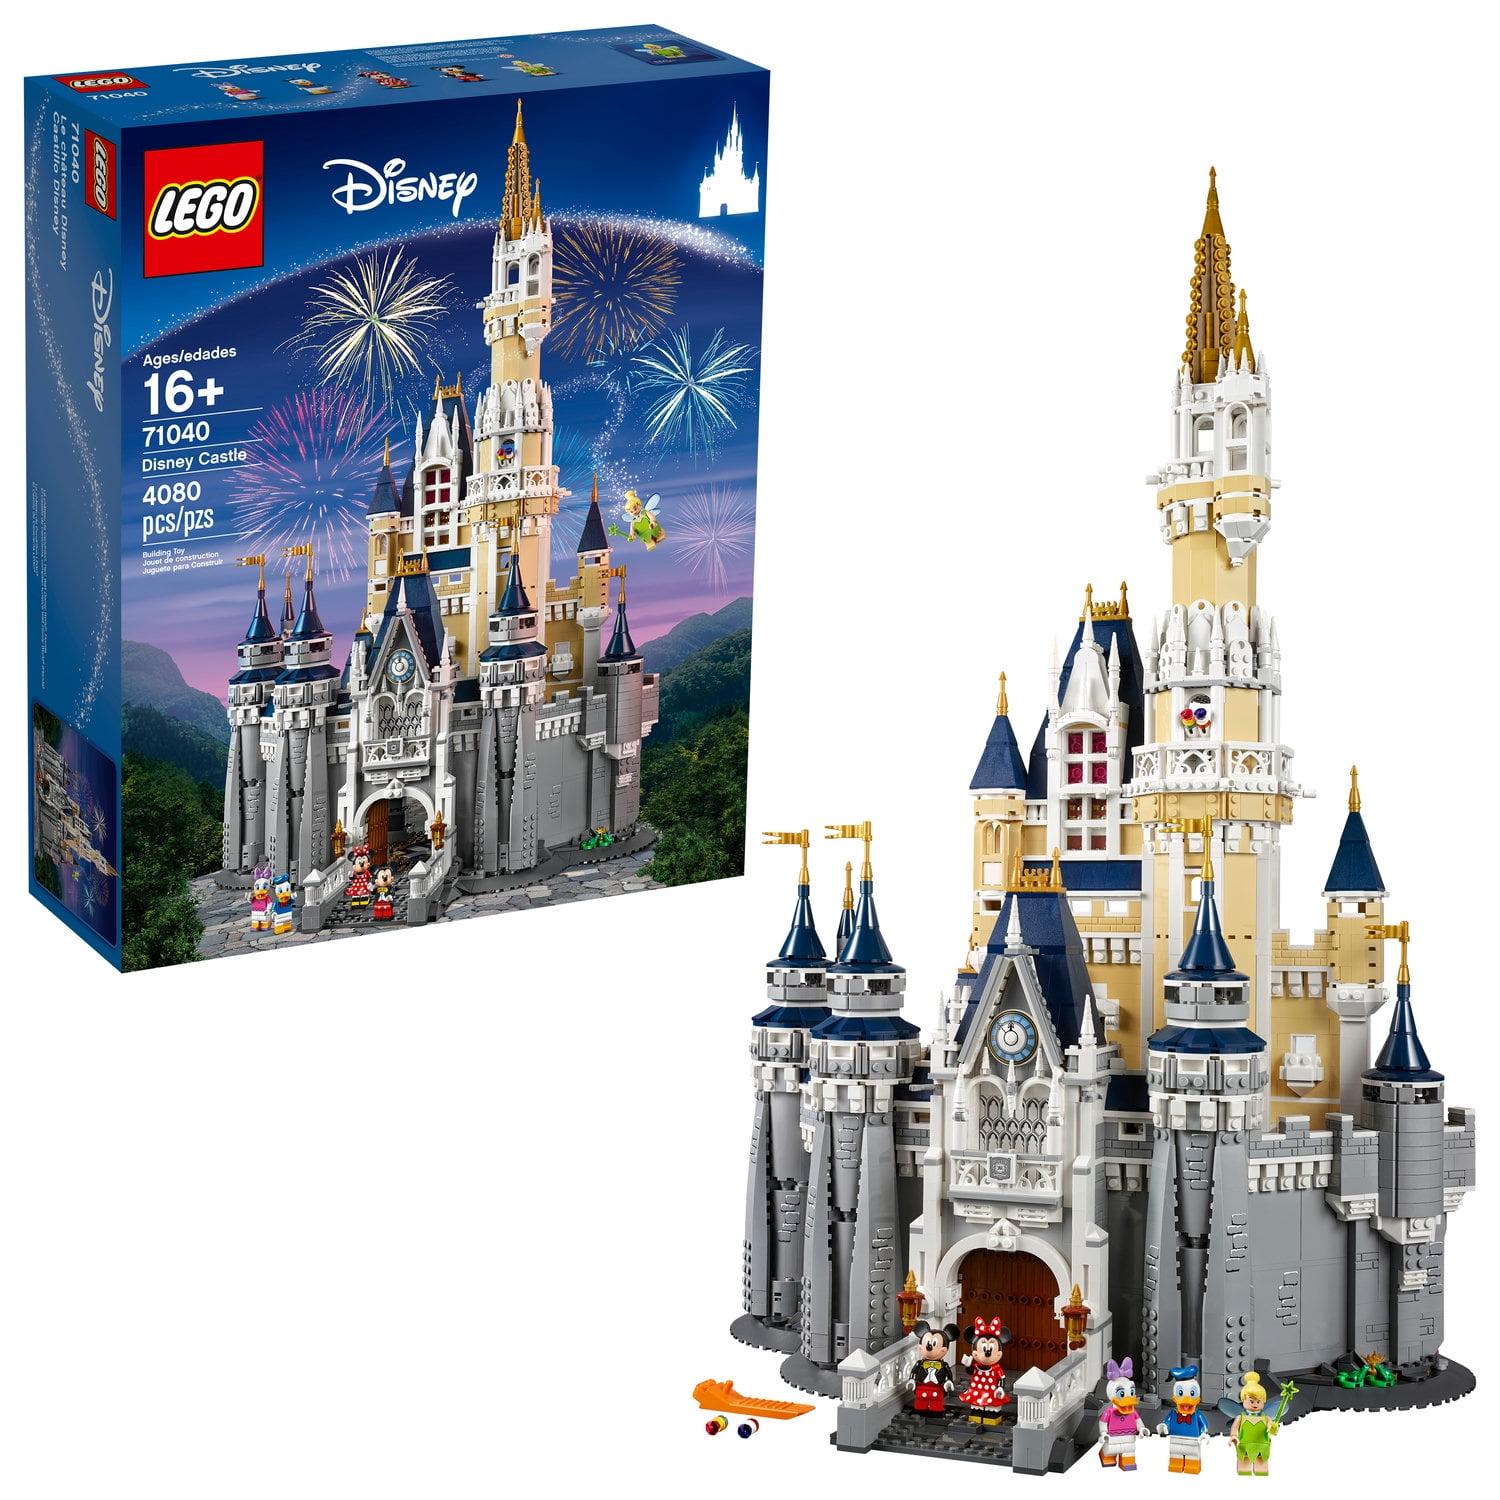 LEGO Disney Castle 71040 Building Set (4080 Pieces) pic